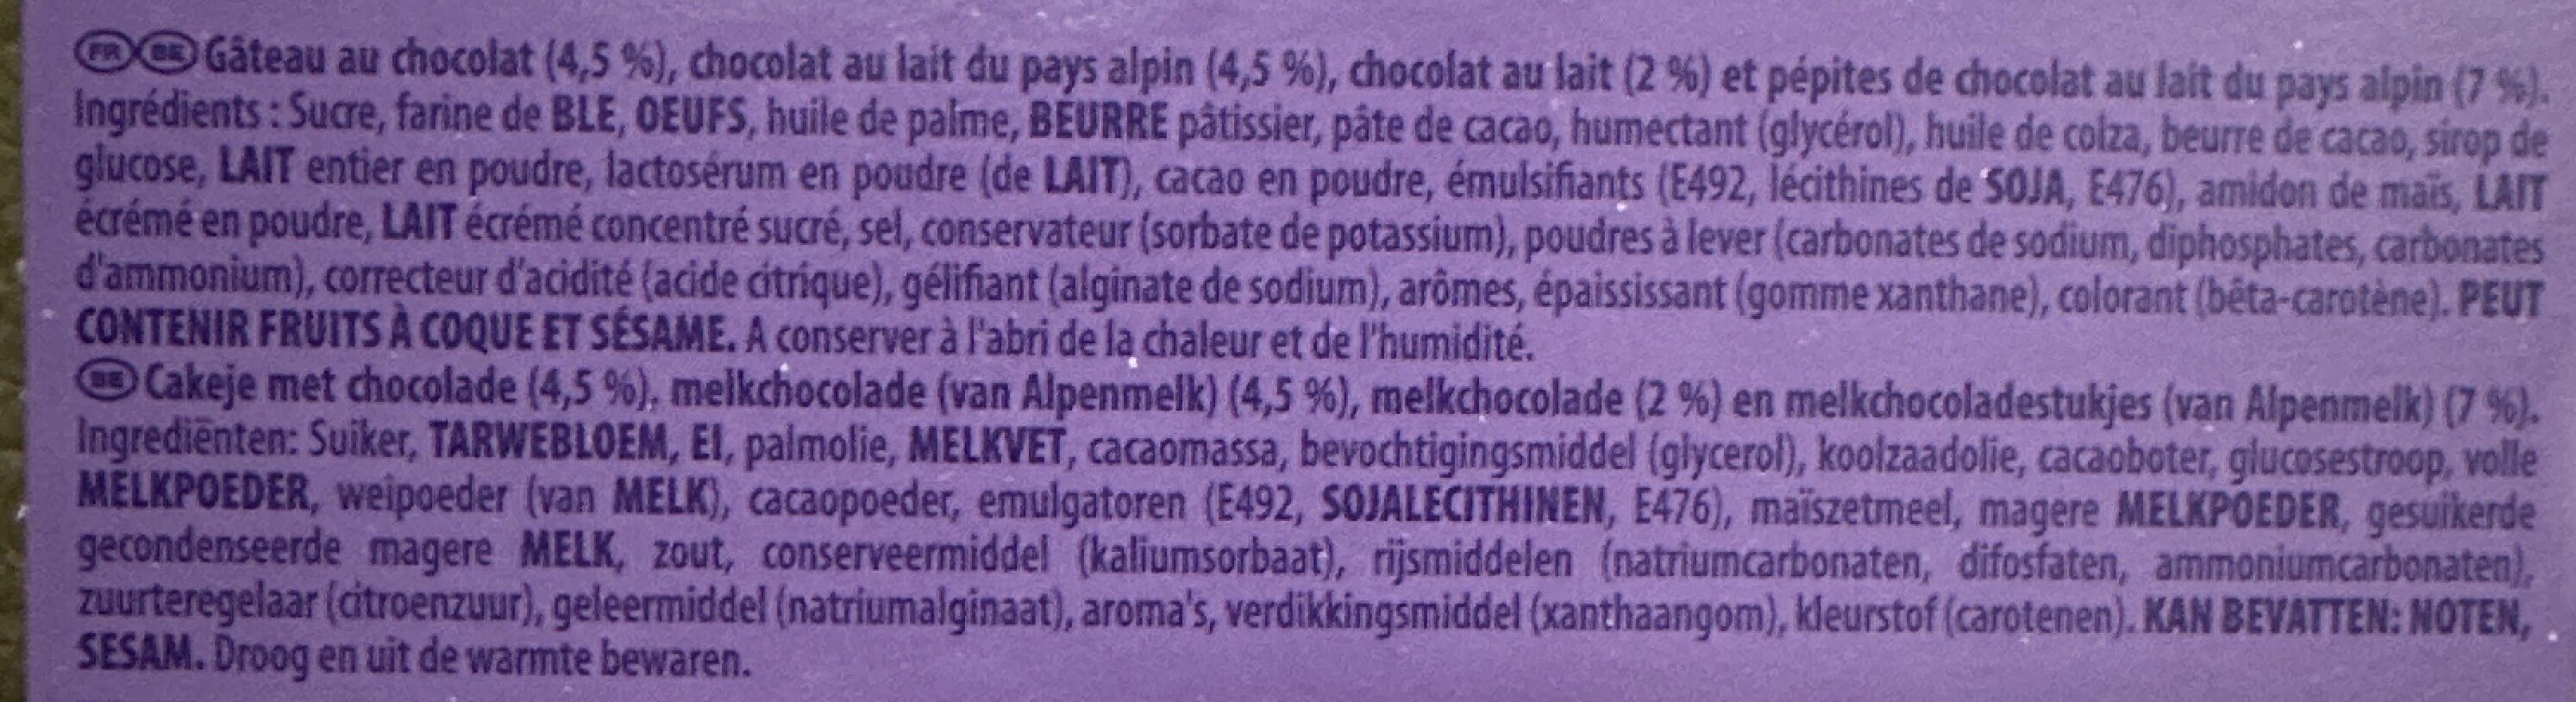 Choco brookie - Ingredients - fr